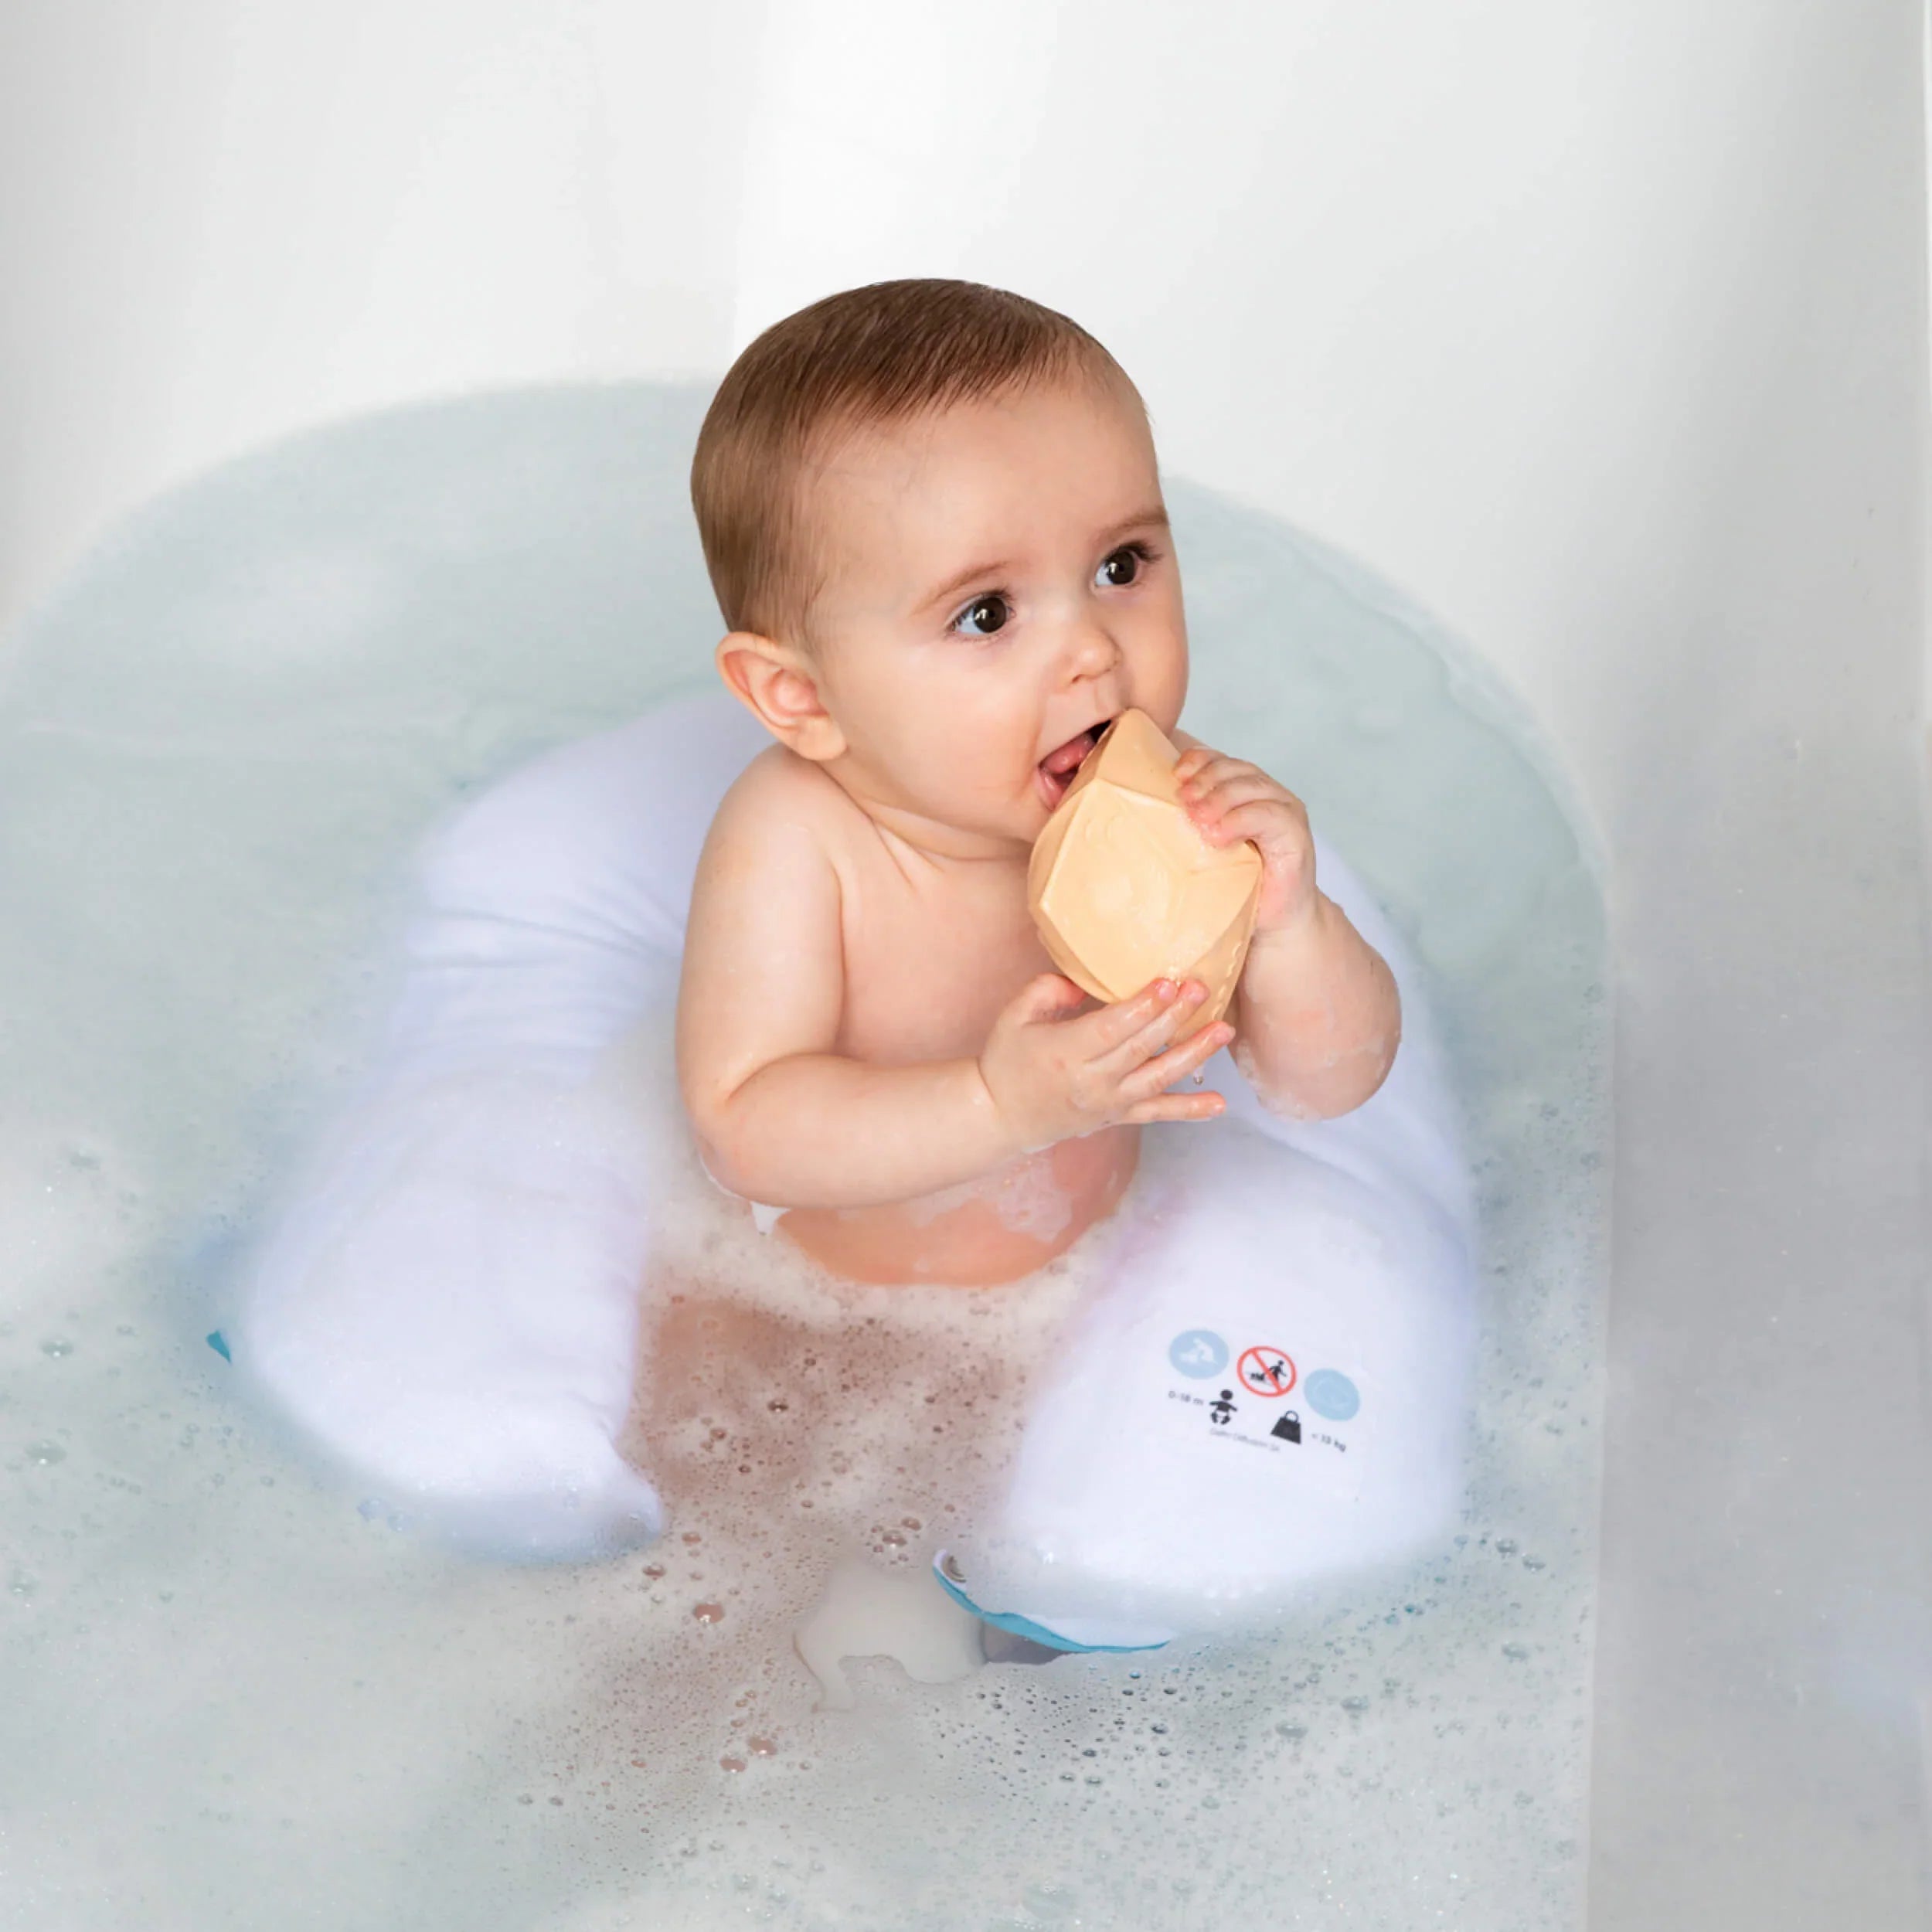 Comment donner le bain à bébé ?, Autour de bébé